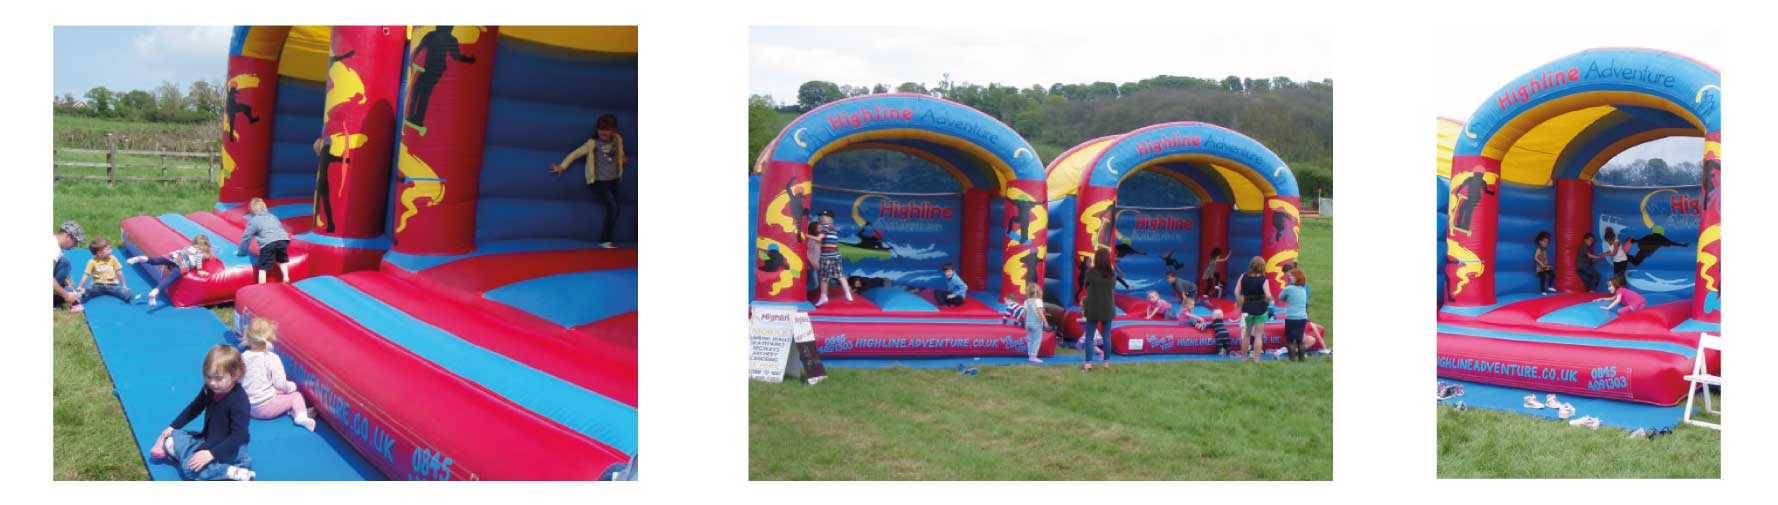 bouncy-castle-hire-uk